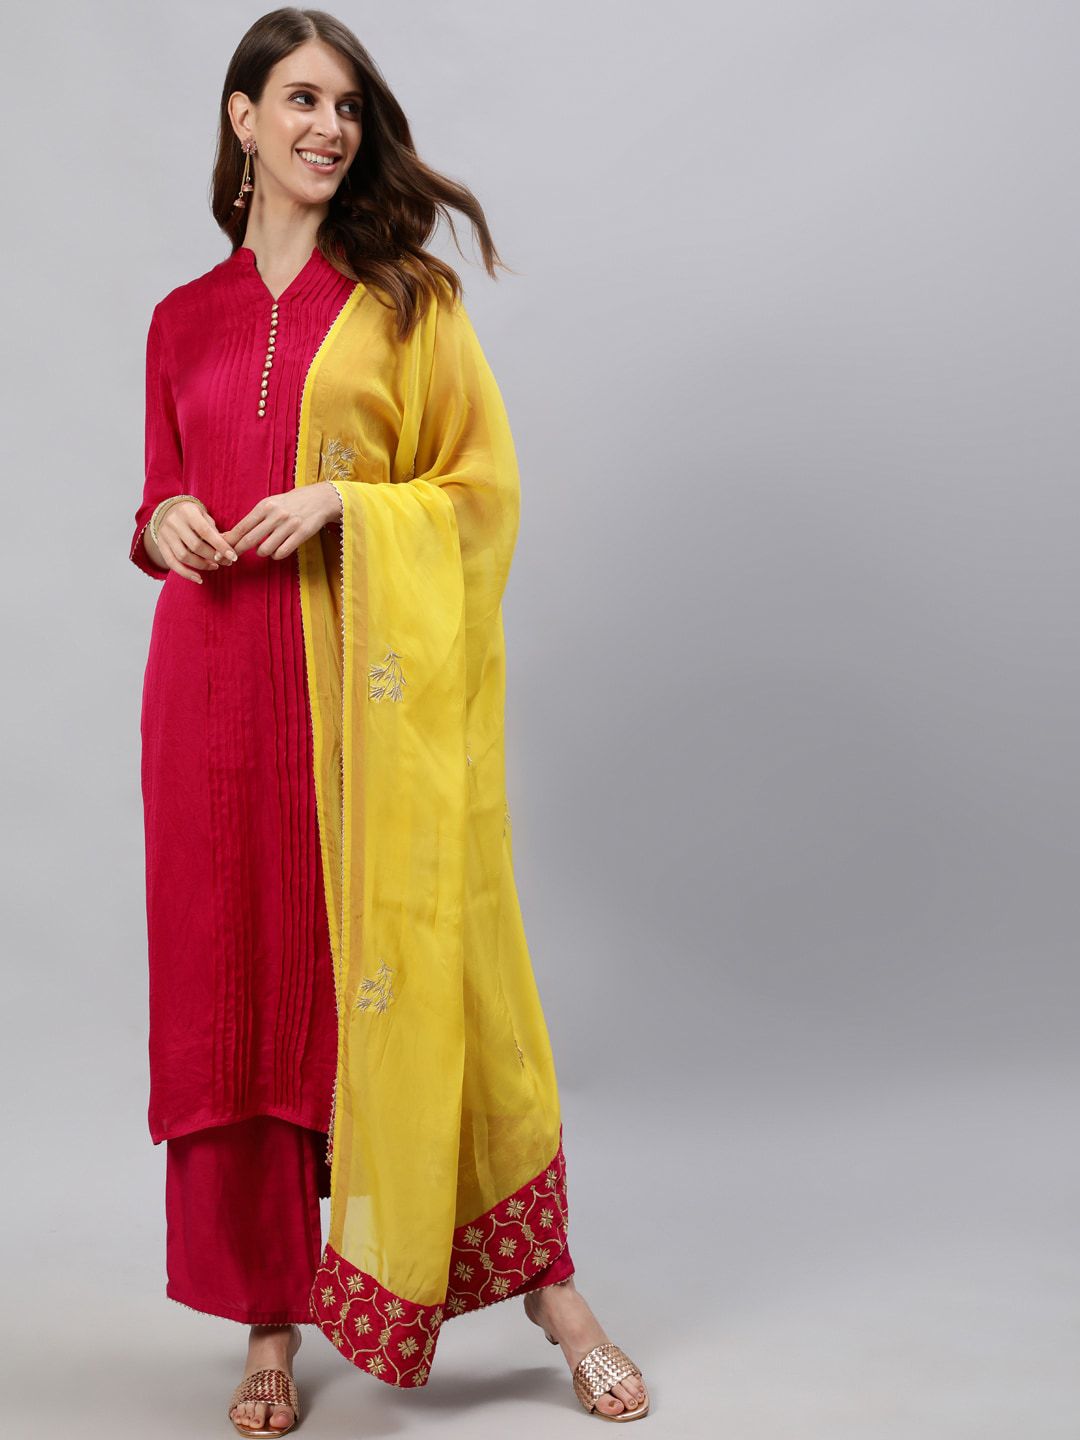 Jaipur Kurti Women Pink & Yellow Pleated Kurta With Palazzos & Dupatta Price in India